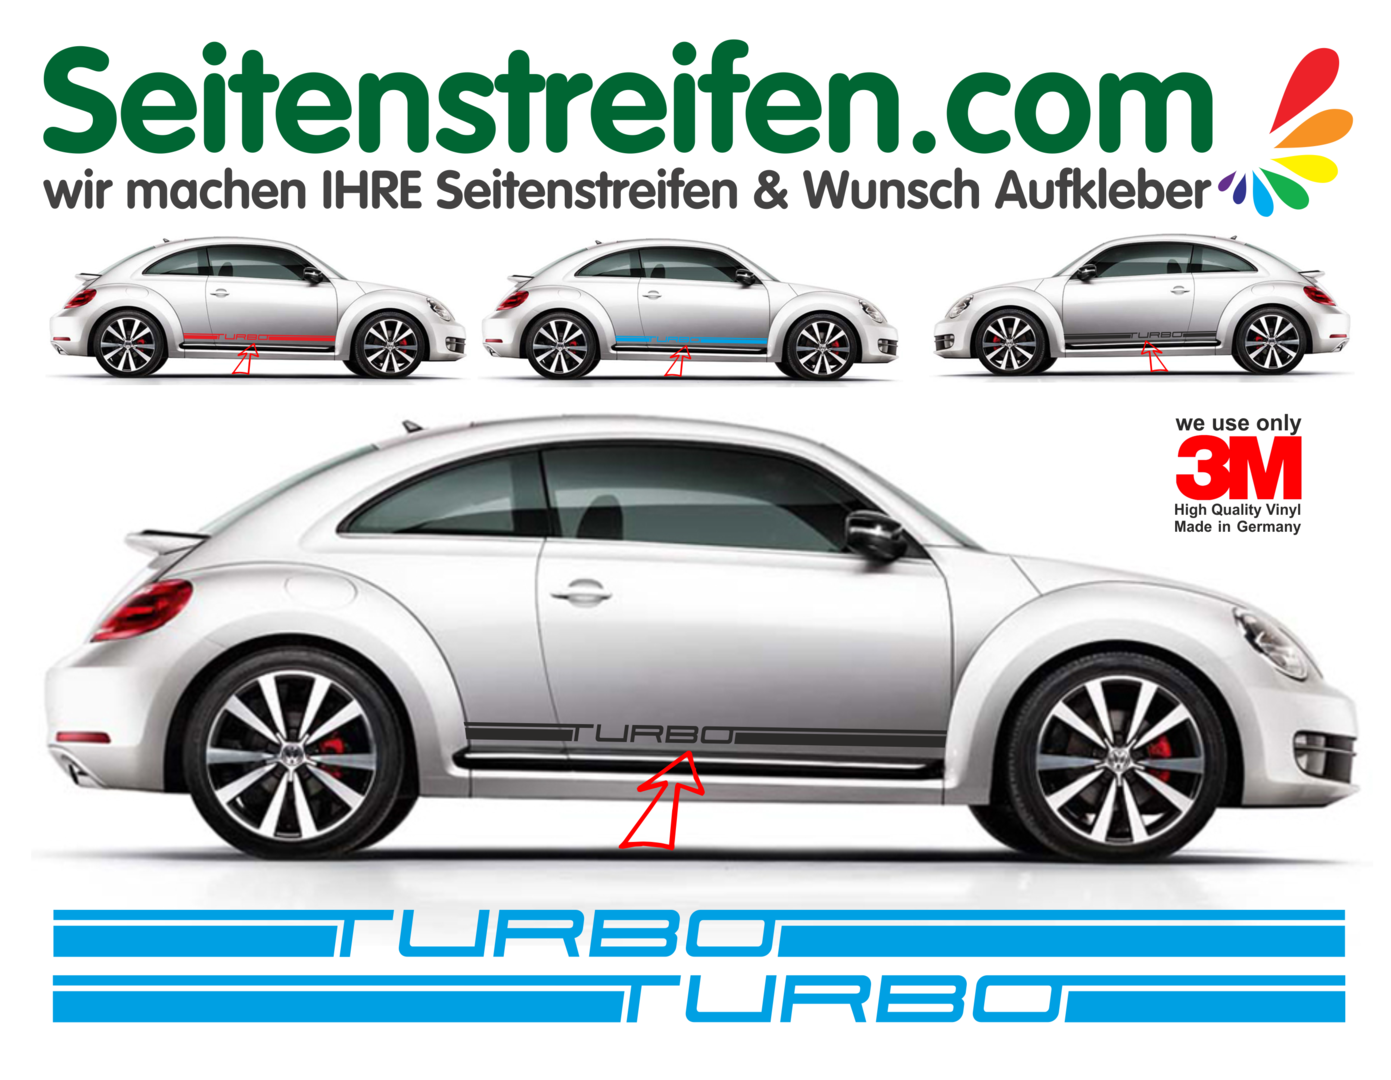 FSXTLLL Auto Seitenstreifen Seitenaufkleber Aufkleber für Volkswagen Beetle 